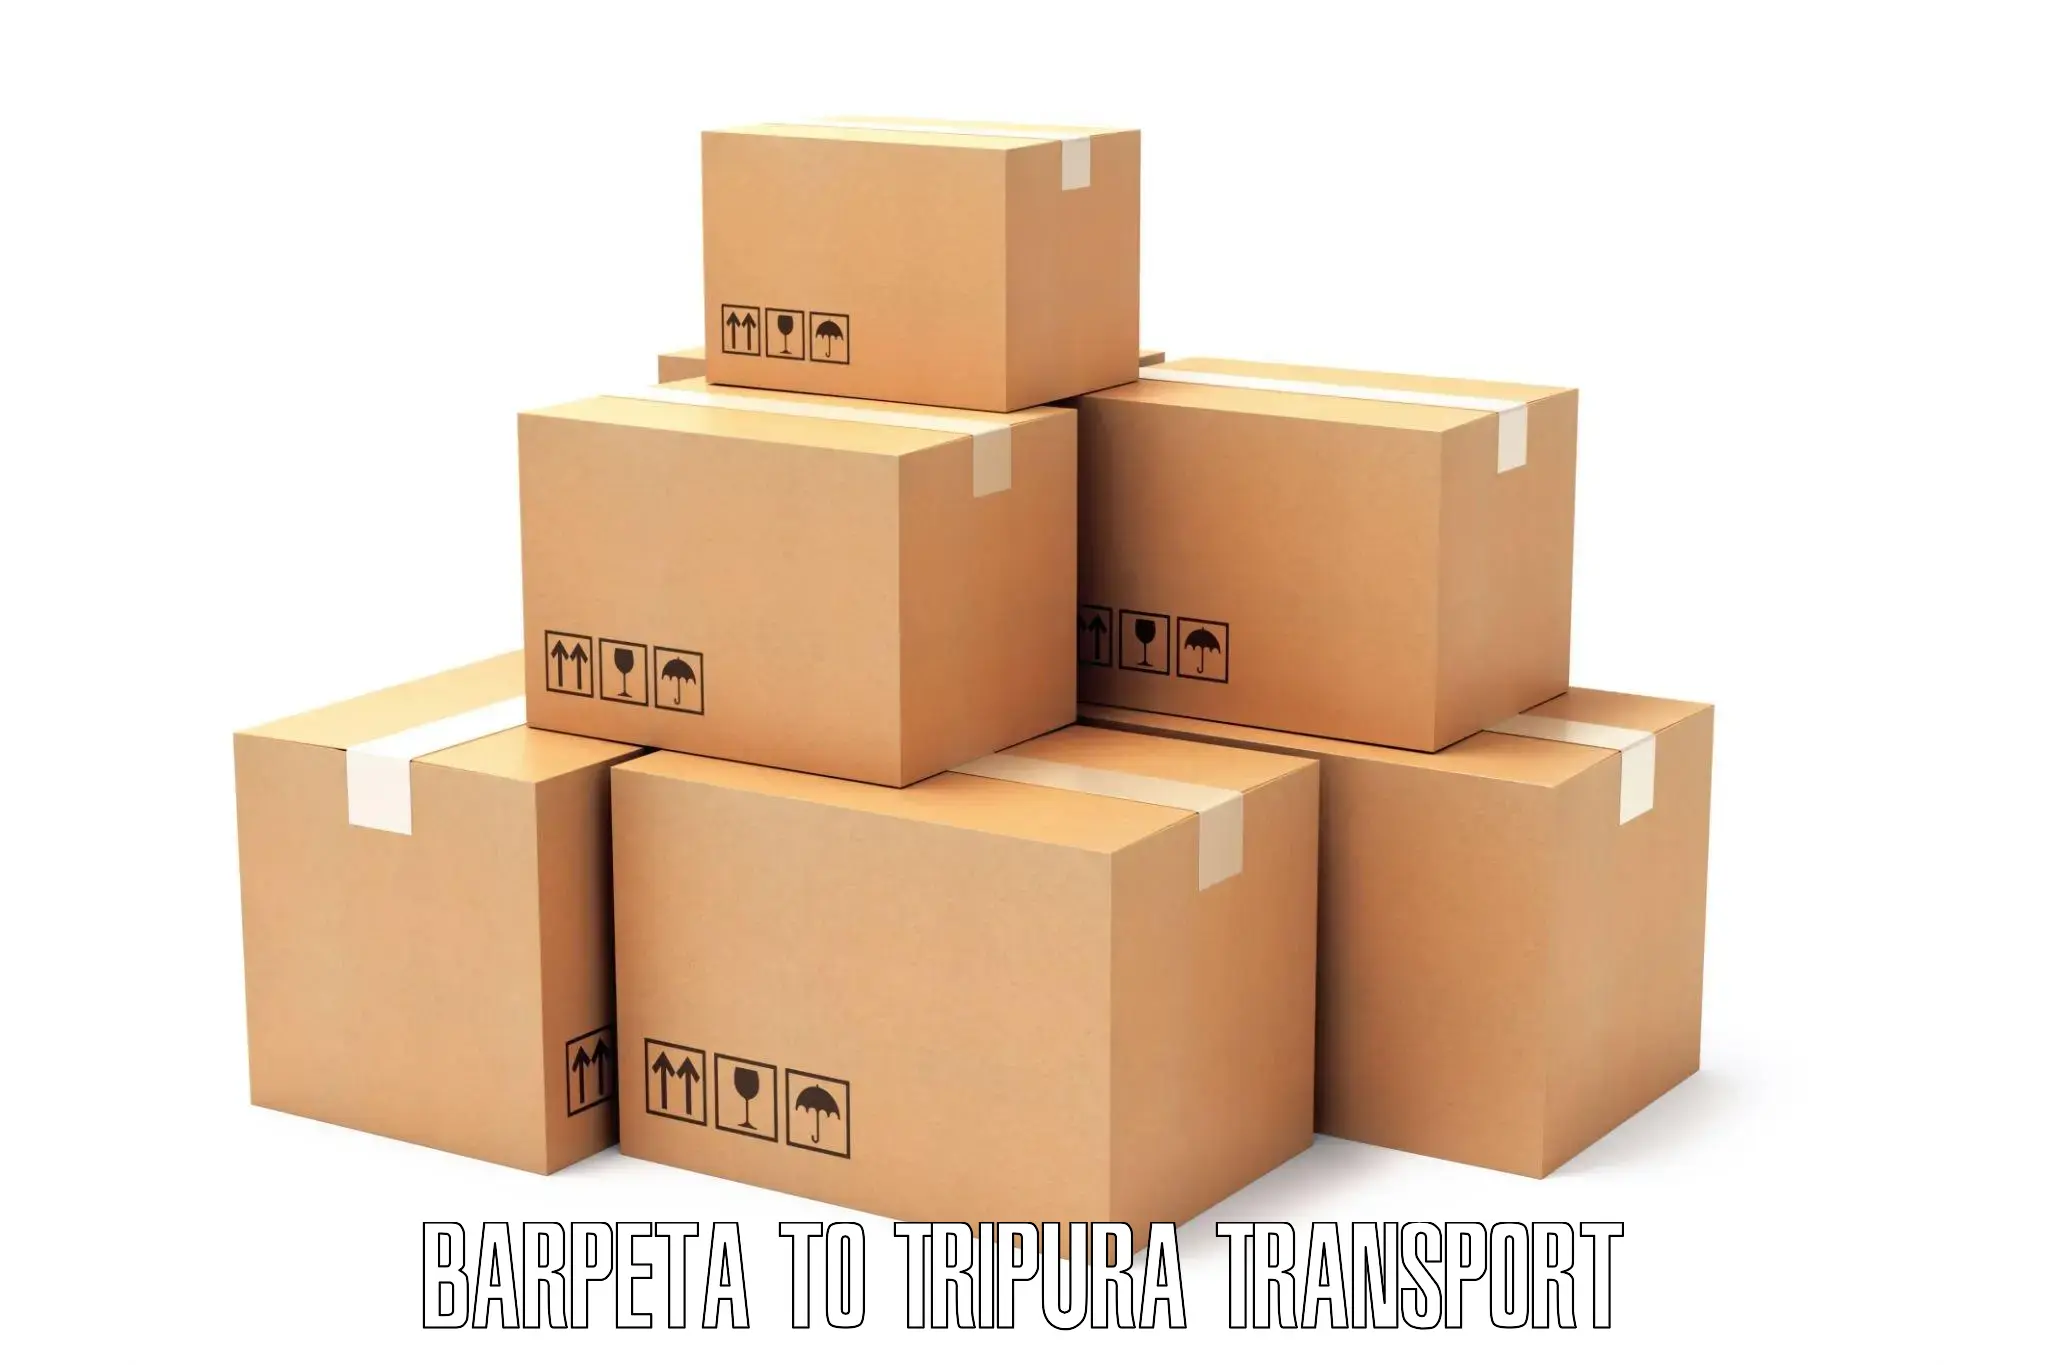 Daily parcel service transport Barpeta to Sonamura